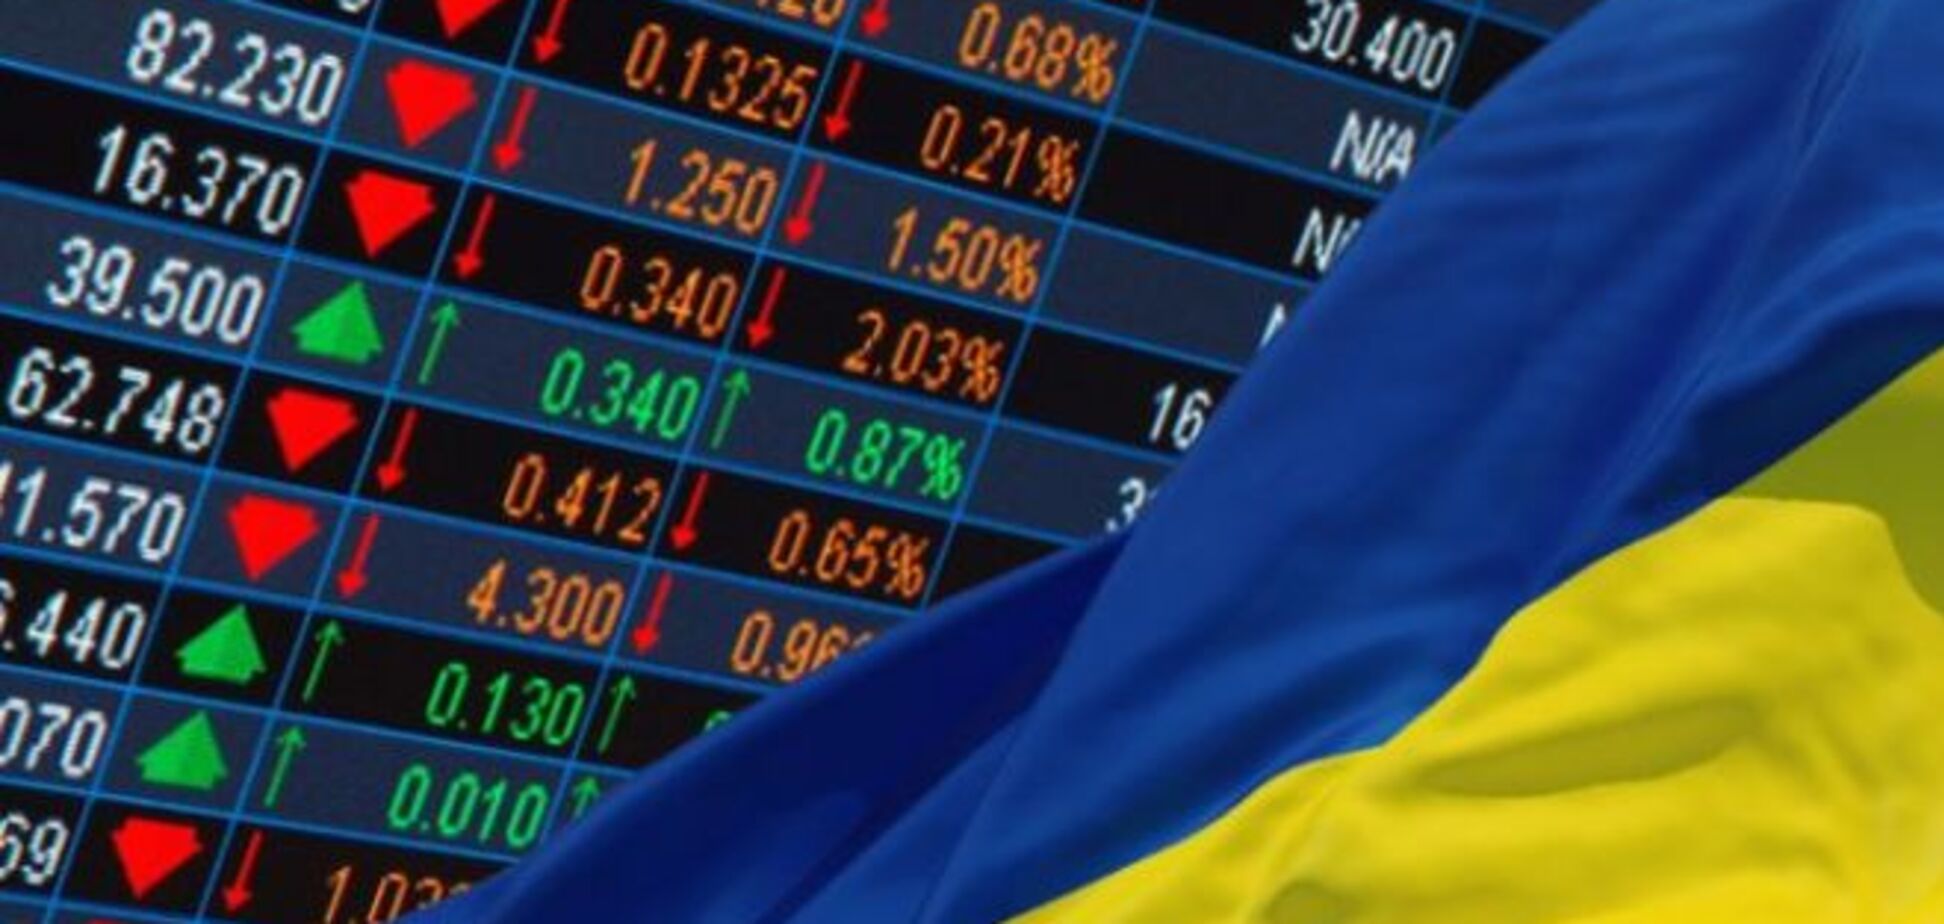 Полбюджета страны за один день: в Украине провели 'чистку' на фондовом рынке